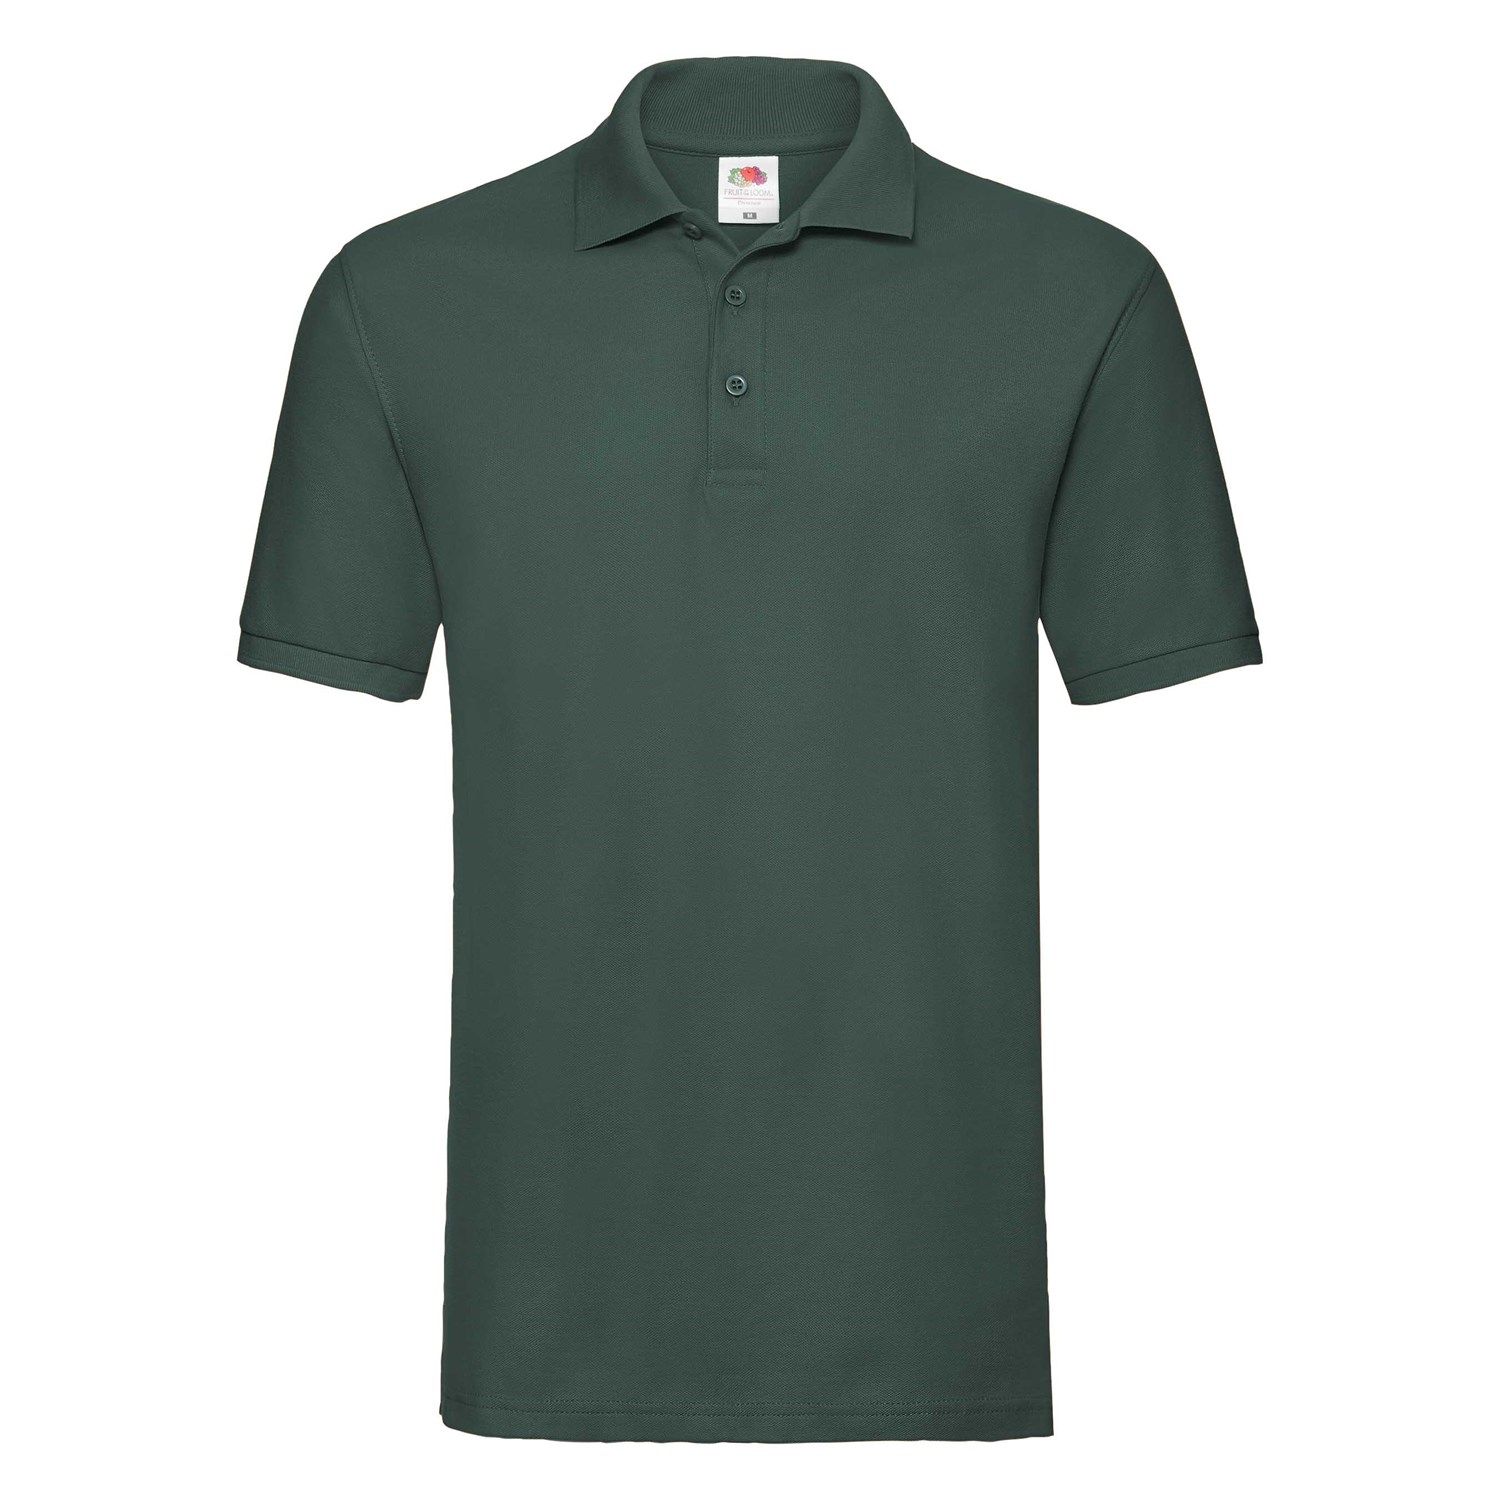 Levně Zielona koszulka męska Premium Polo Friut of the Loom